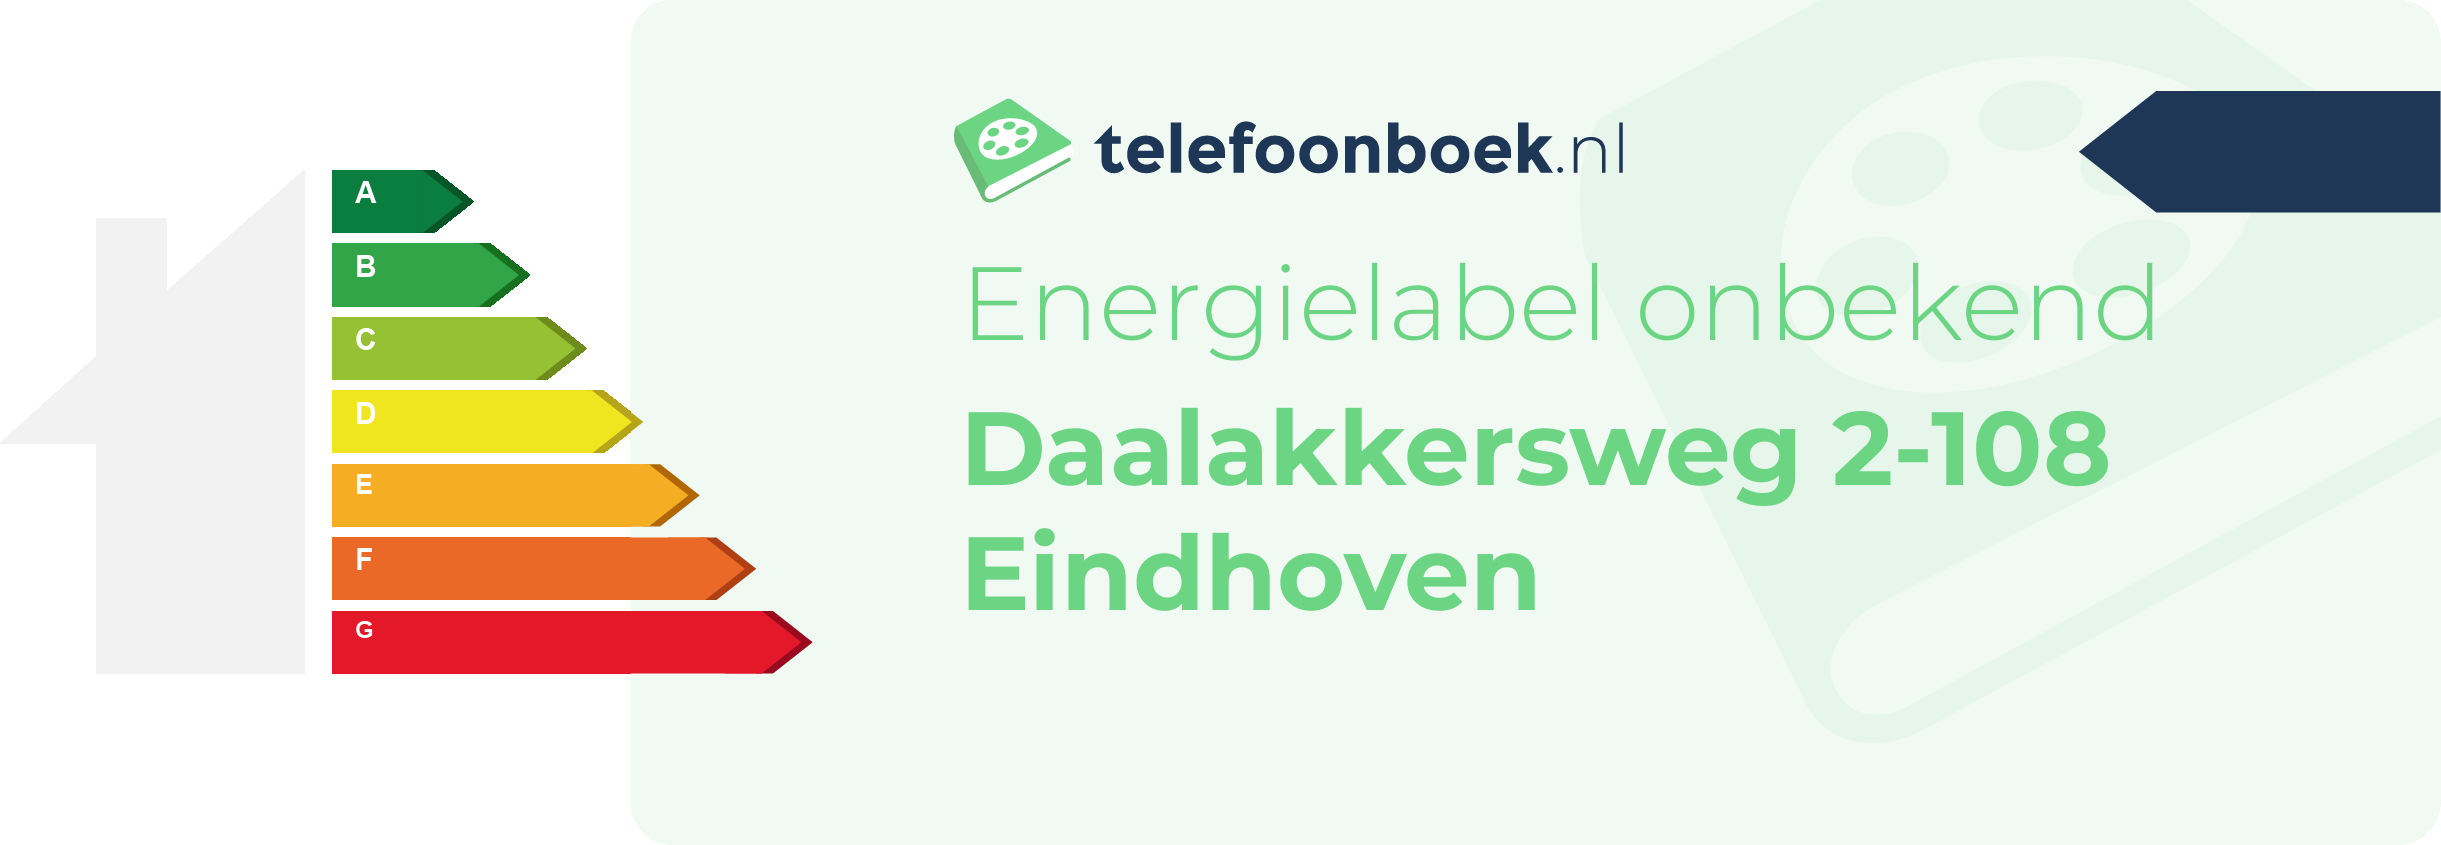 Energielabel Daalakkersweg 2-108 Eindhoven